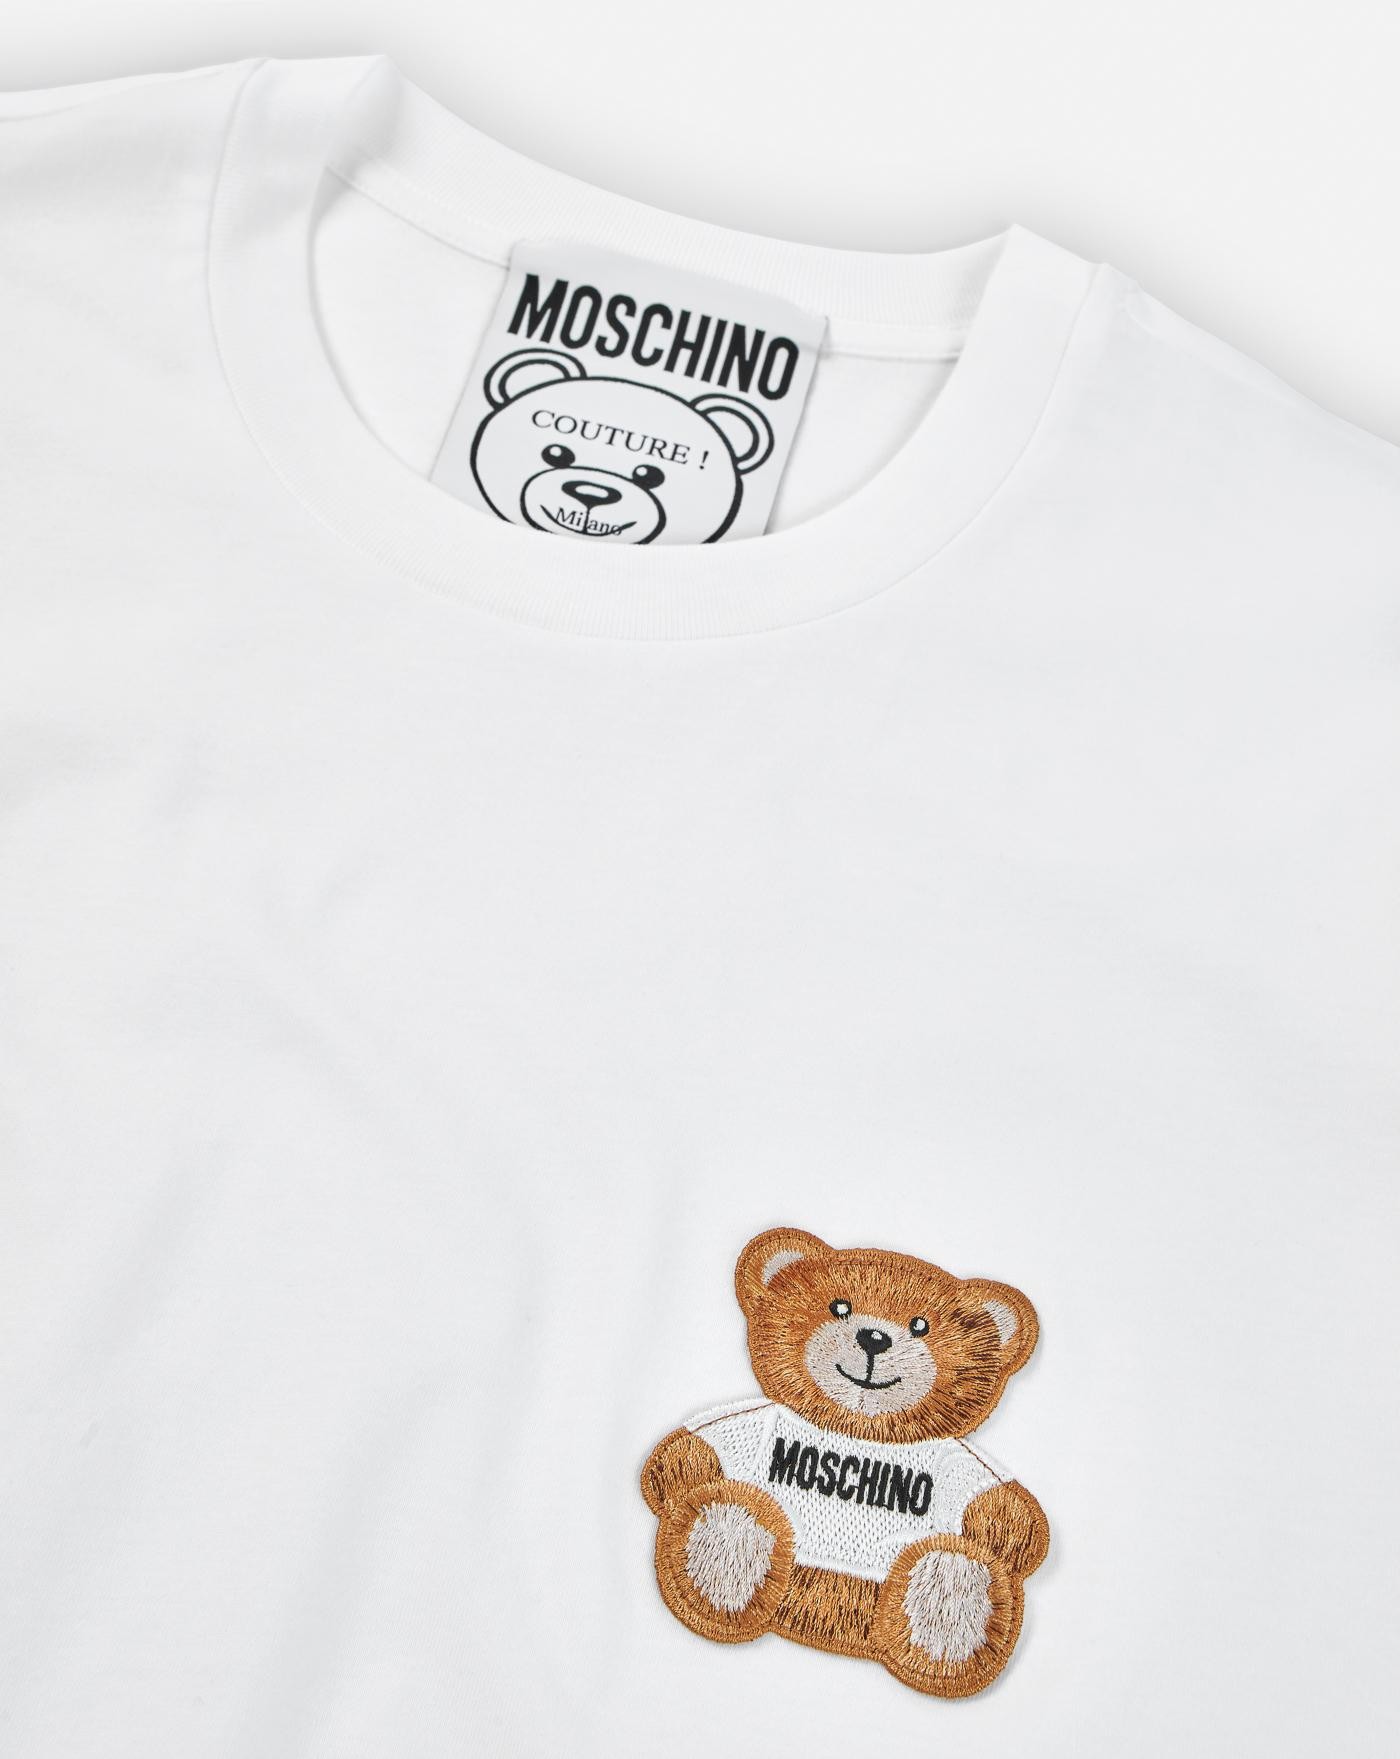 Camiseta Moschino Bear 2